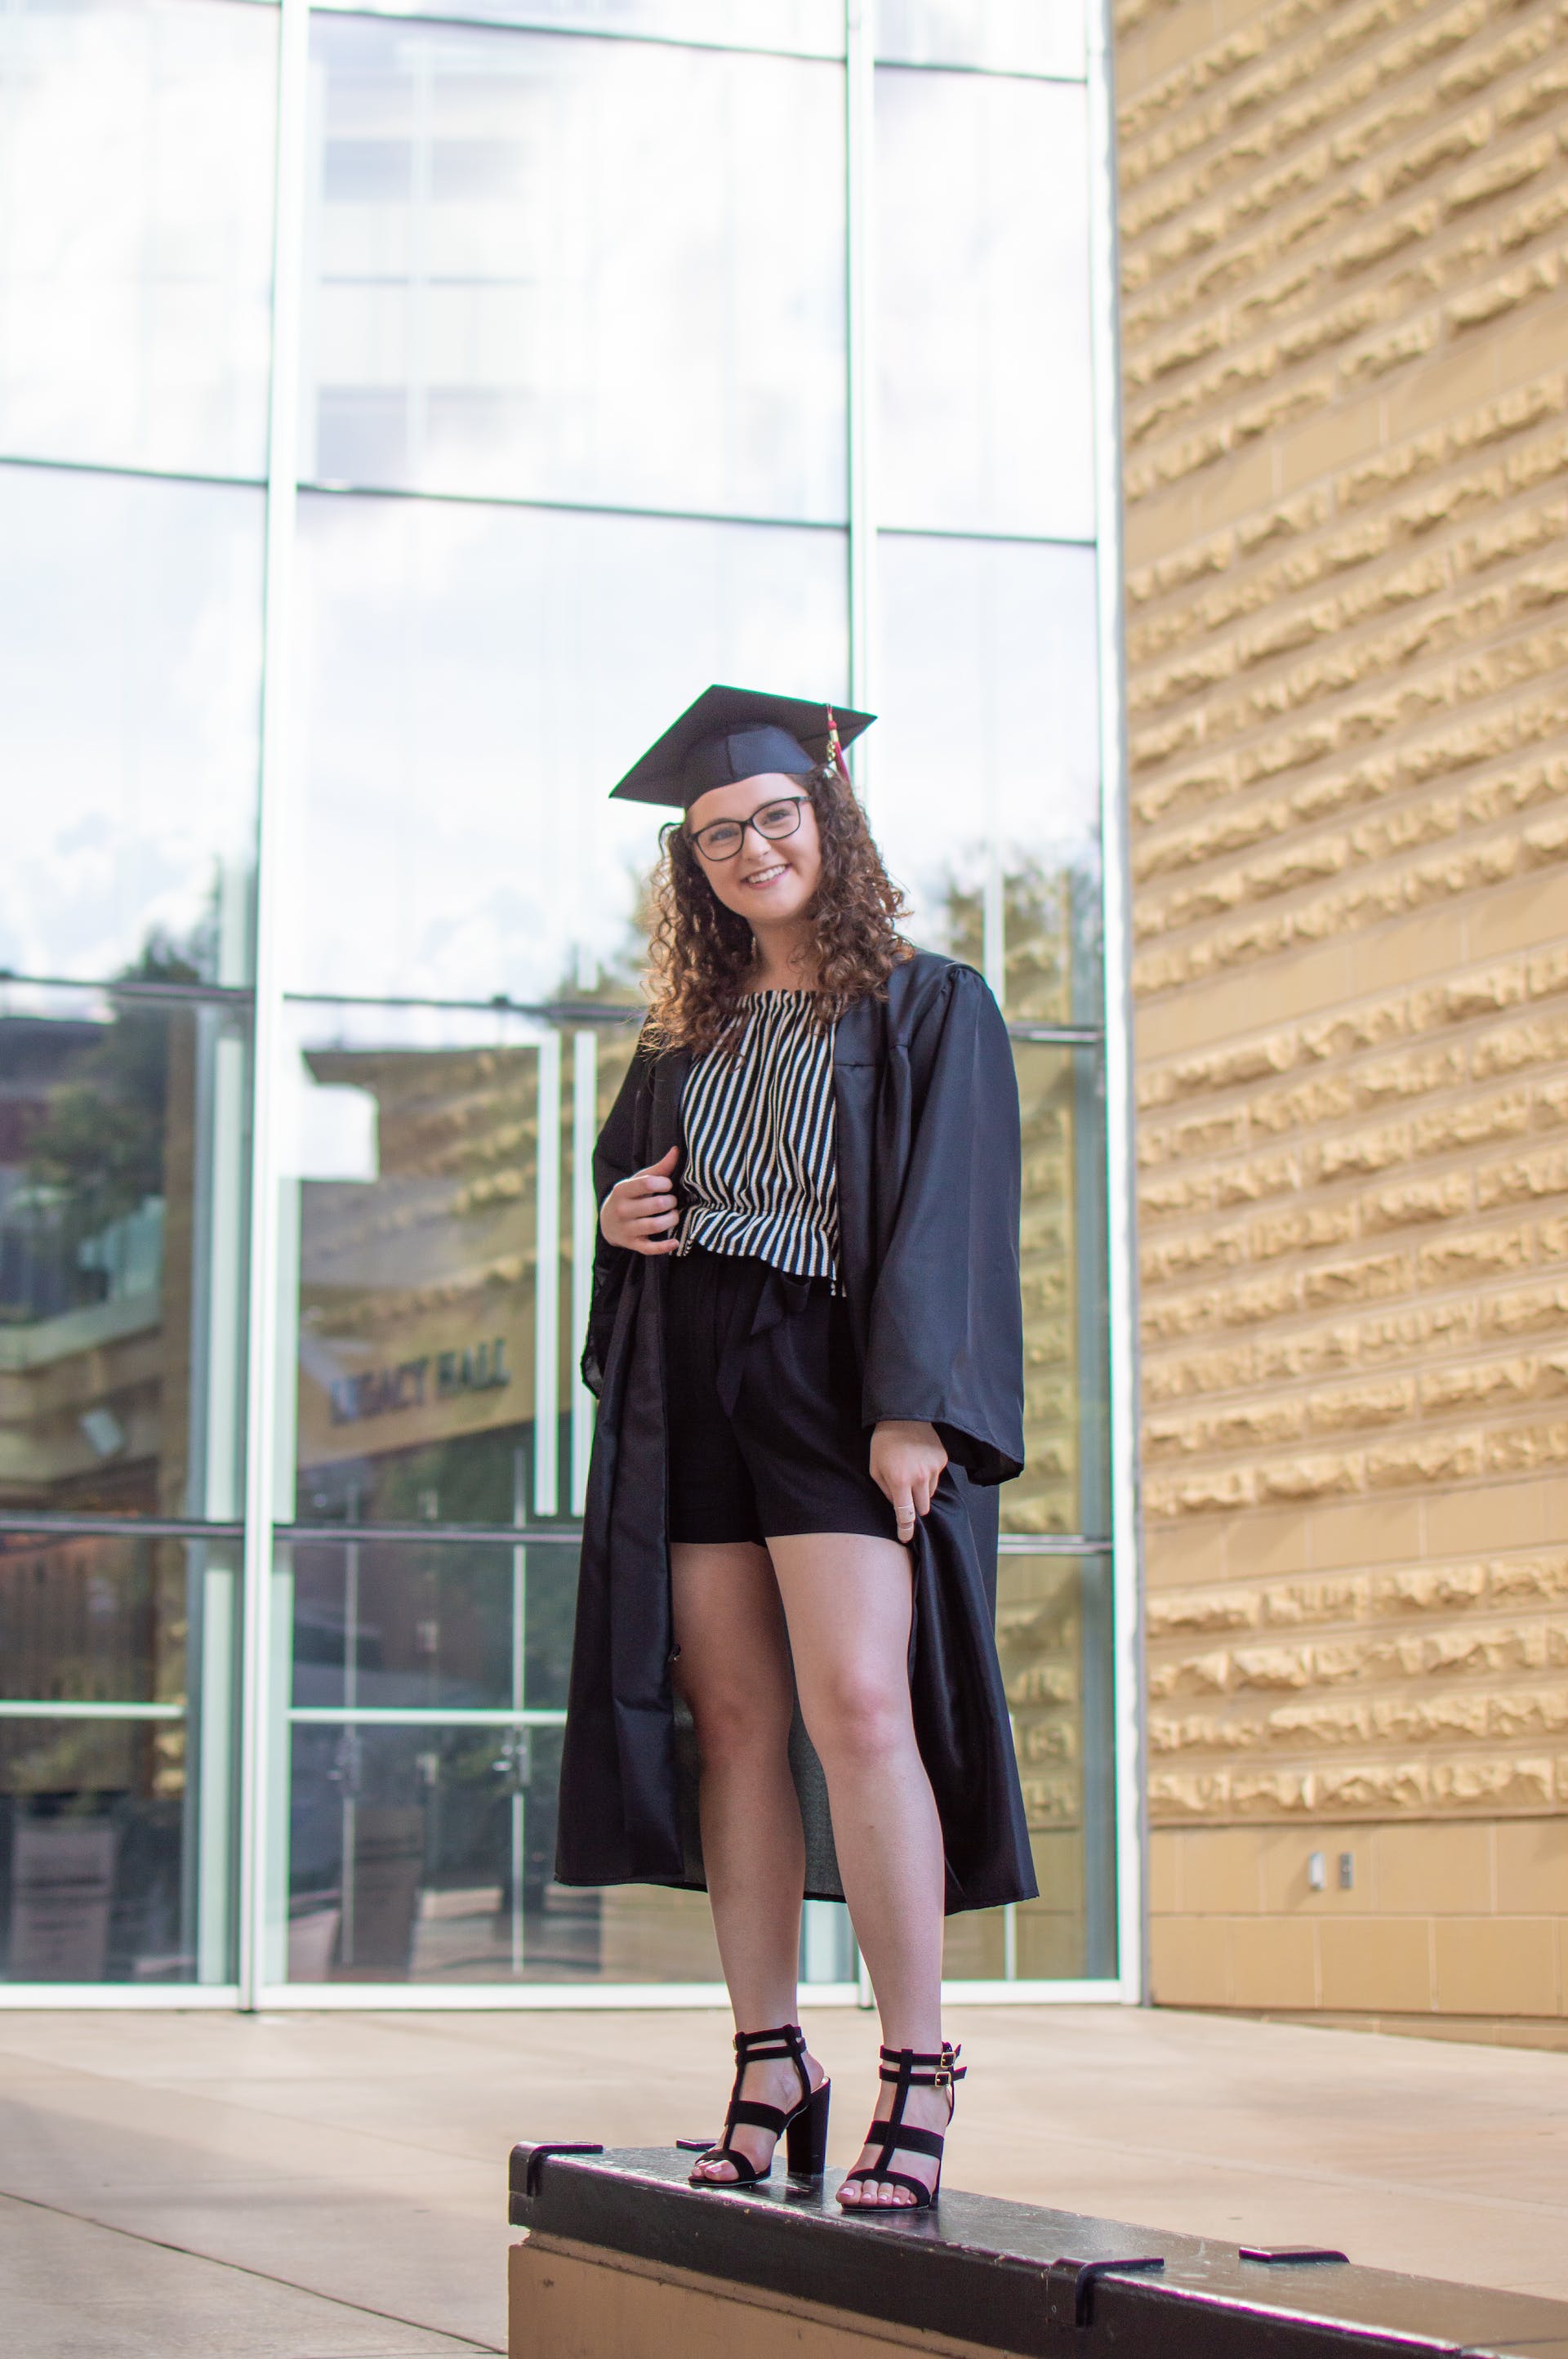 Eine junge Frau in Abschlusskleidung | Quelle: Pexels